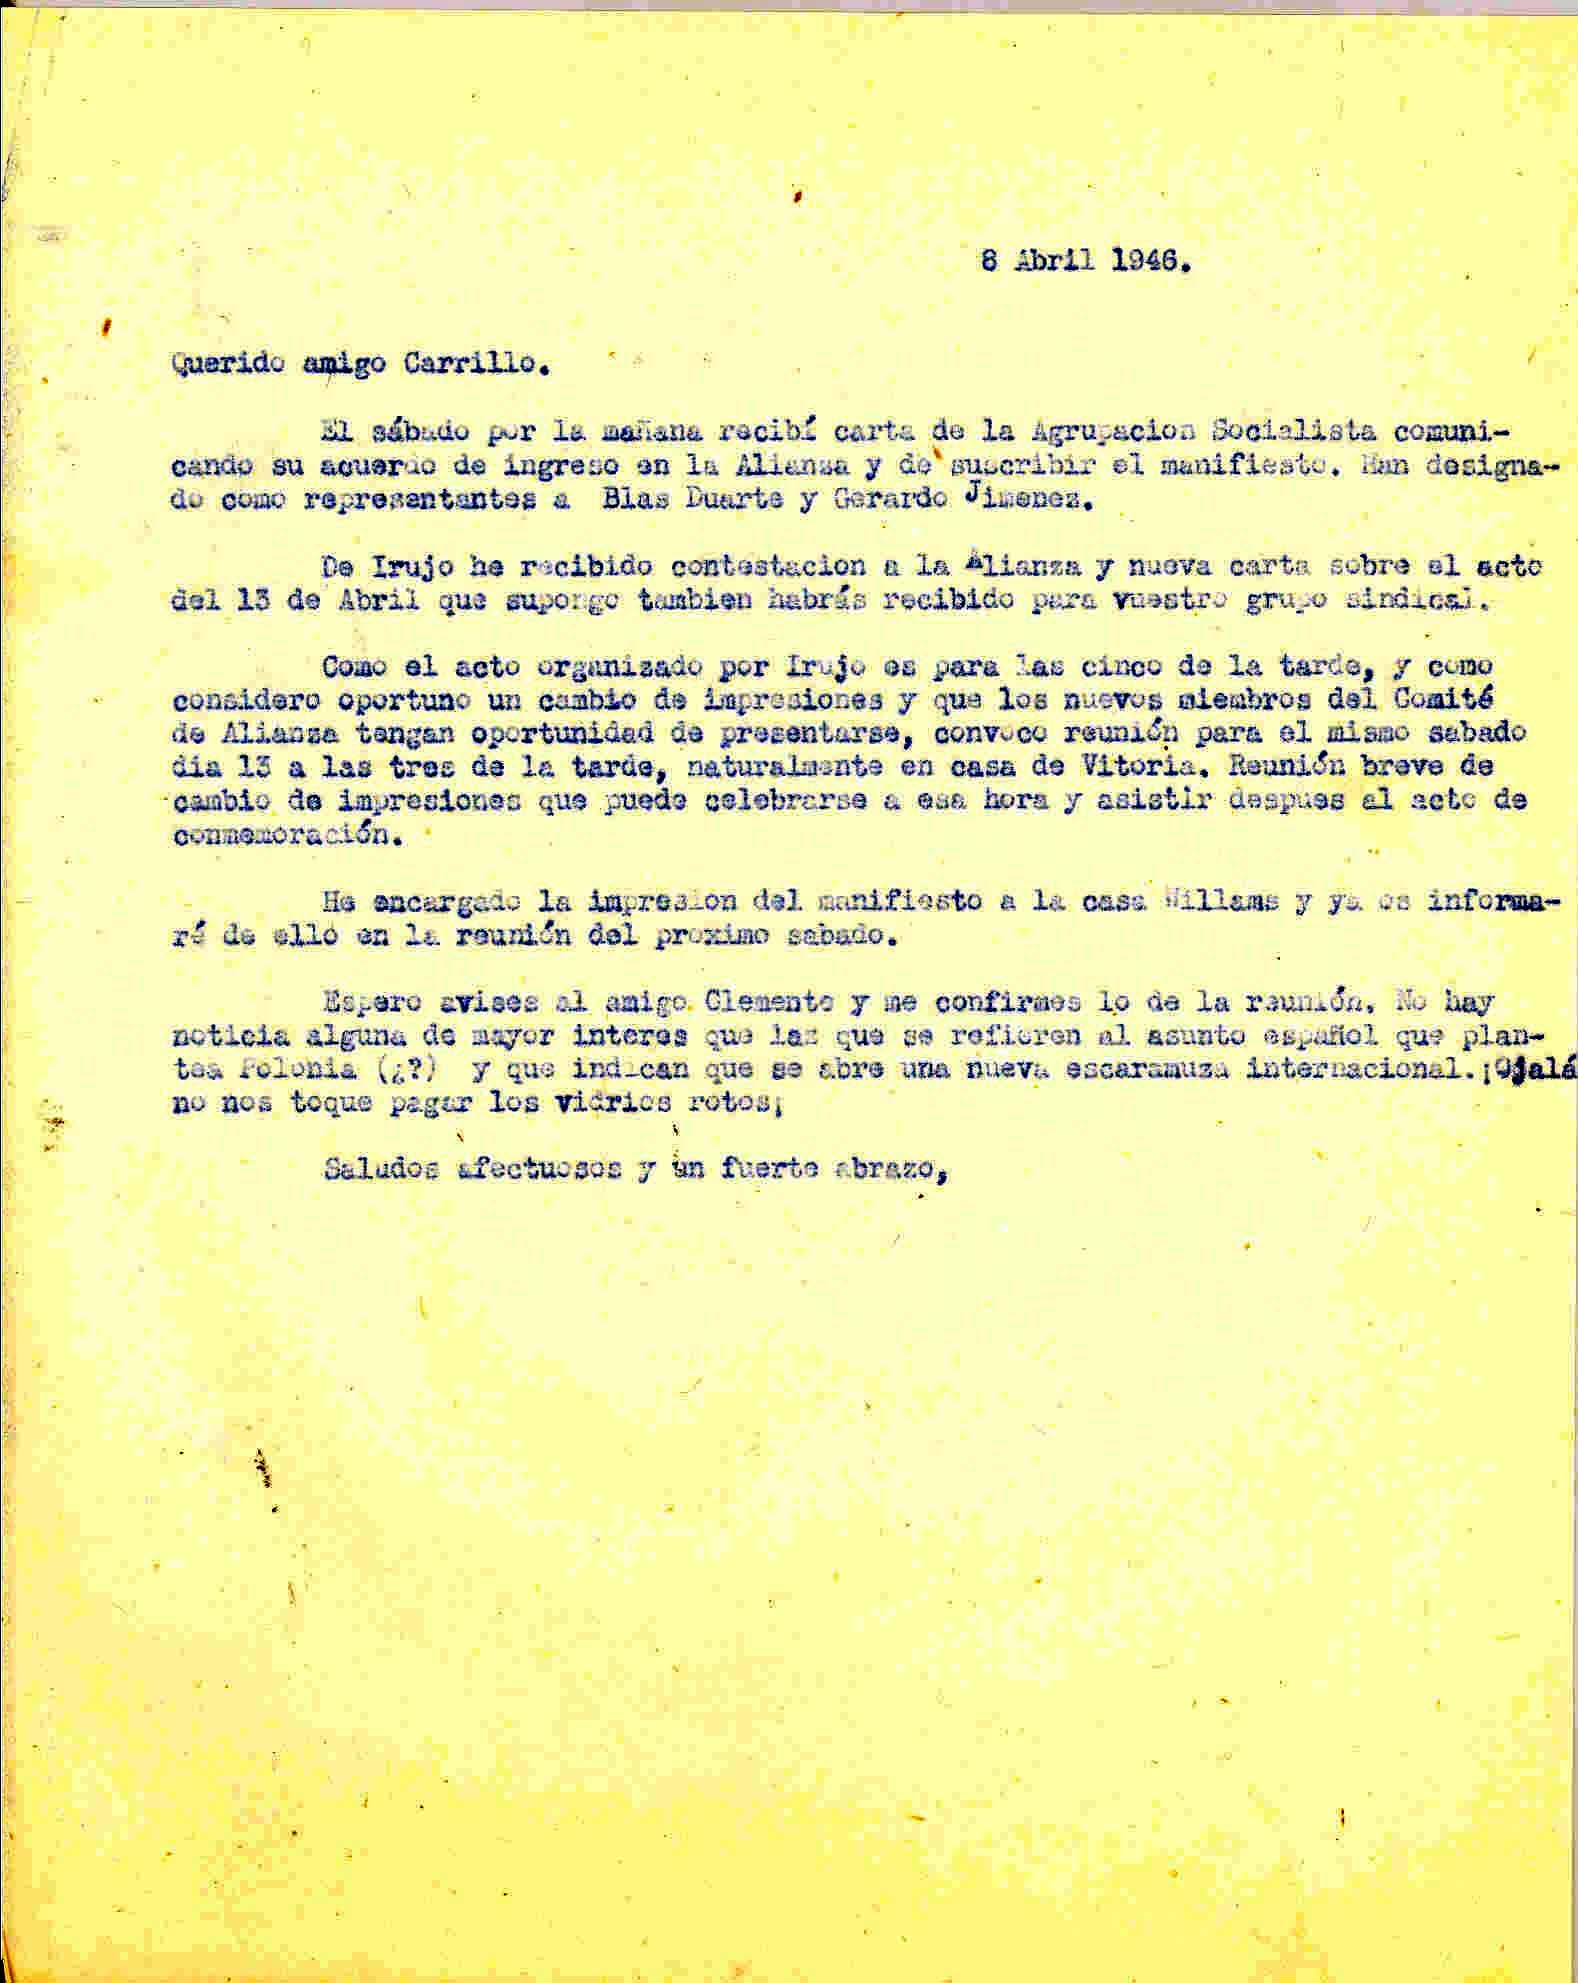 Carta a Wenceslao Carrillo en la que convoca reunión del comité de la Alianza al haber ingresado los socialistas en la misma, comenta la invitación del ministro Irujo a los actos del 13 de abril y la decisión de imprimir el manifiesto.